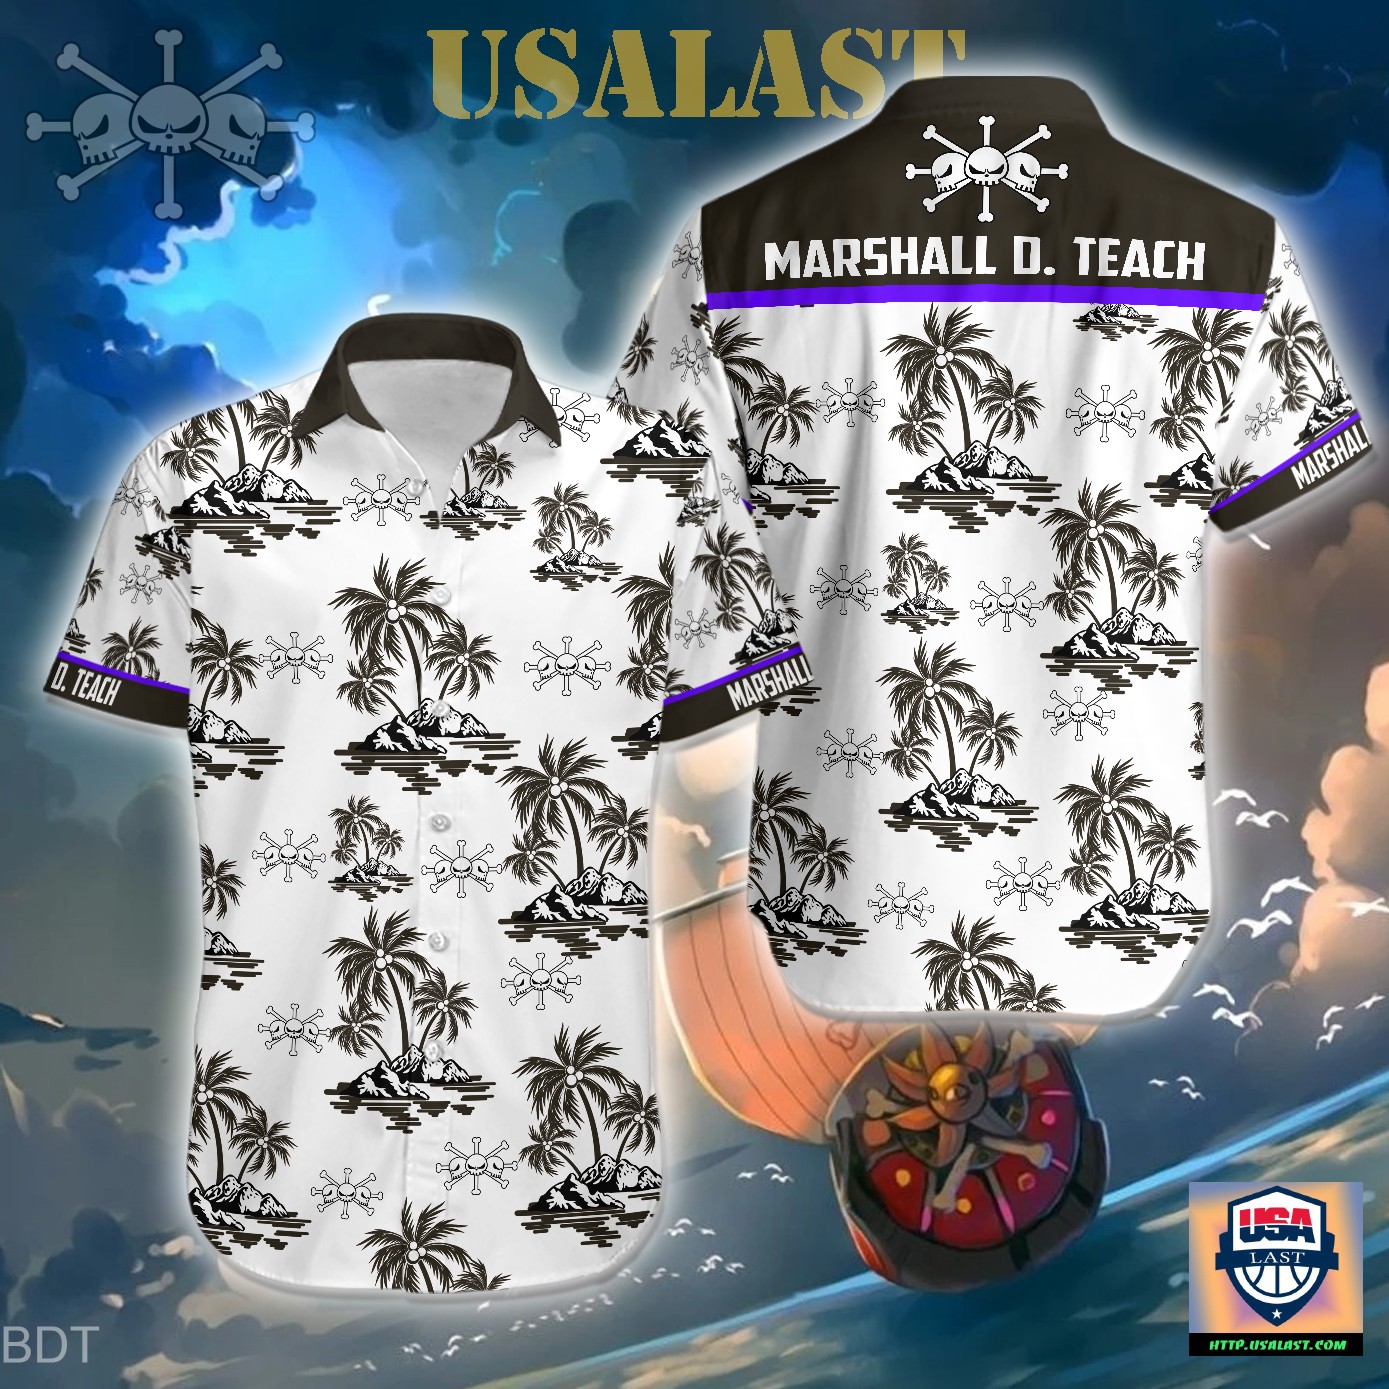 [Available] One Piece Marshall D. Teach Blackbeard Hawaiian Shirt - Usalast